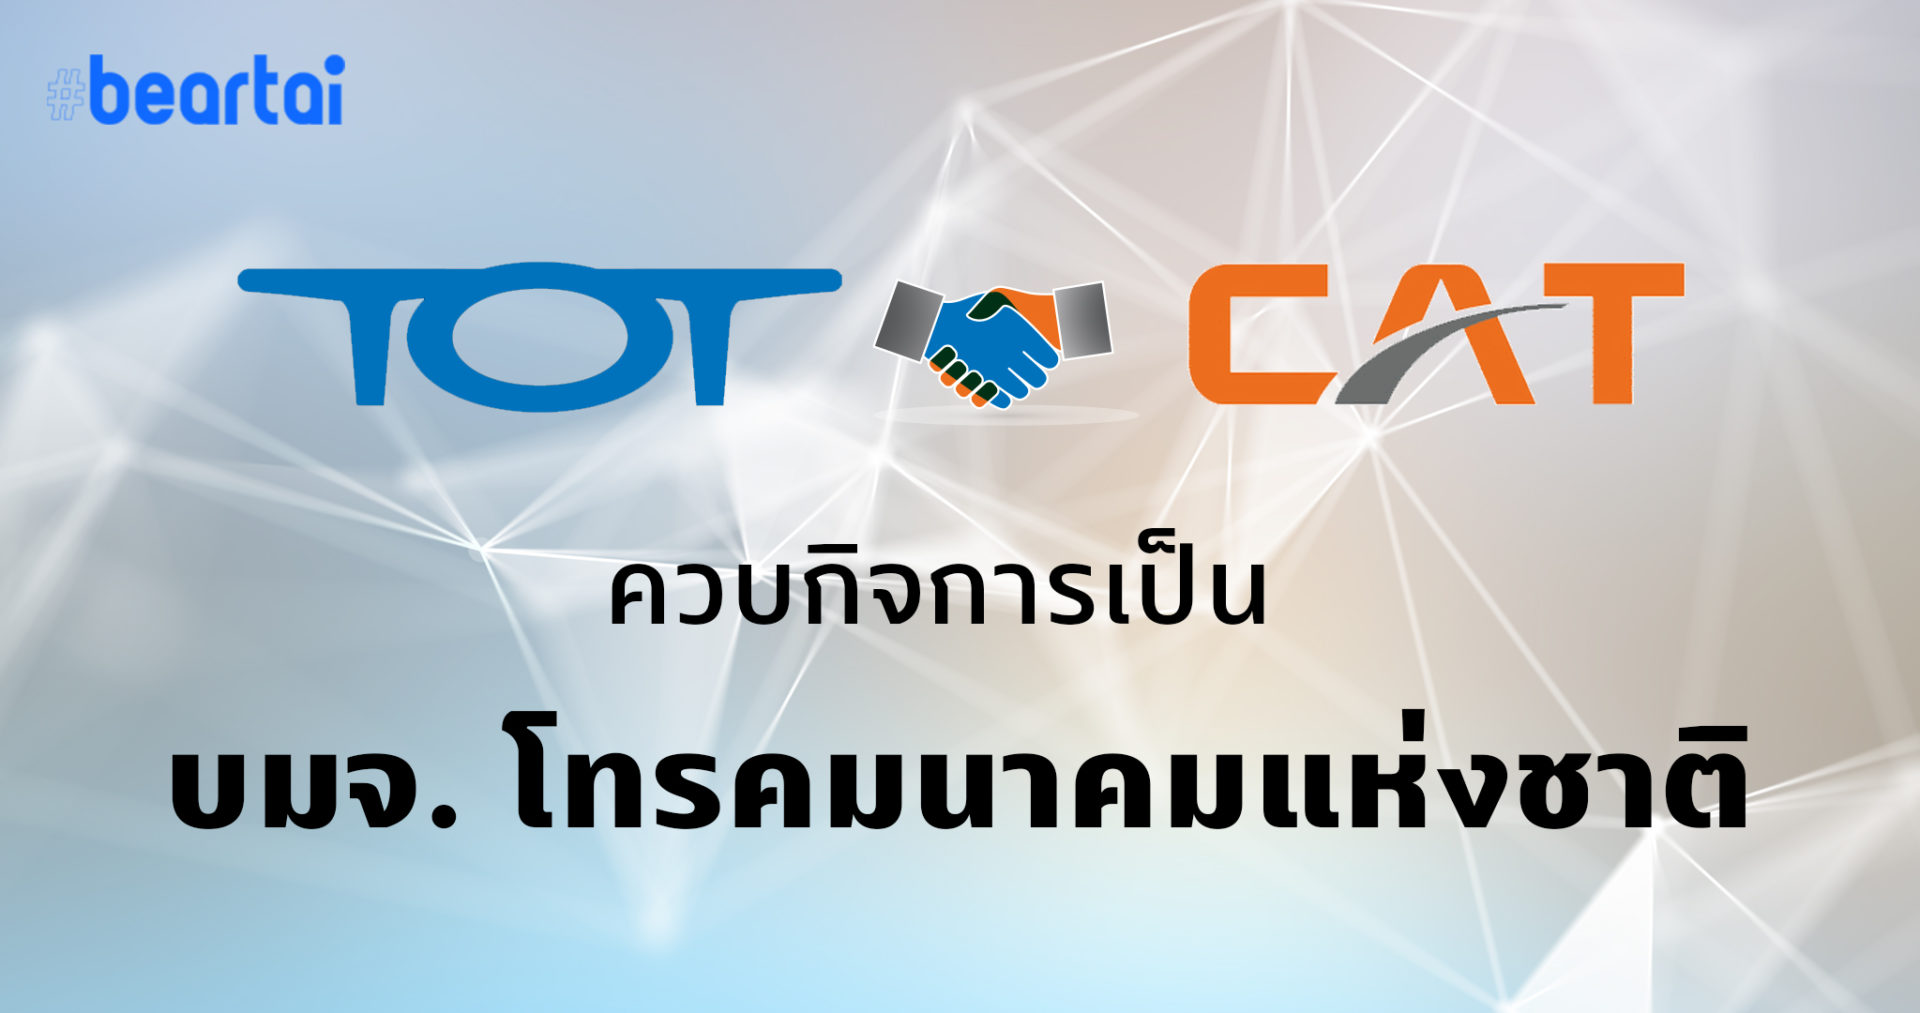 TOT กอดคอ CAT รวมกิจการเป็น NT โทรคมนาคมแห่งชาติ พร้อมลุยตลาด 5G กลางปีนี้!